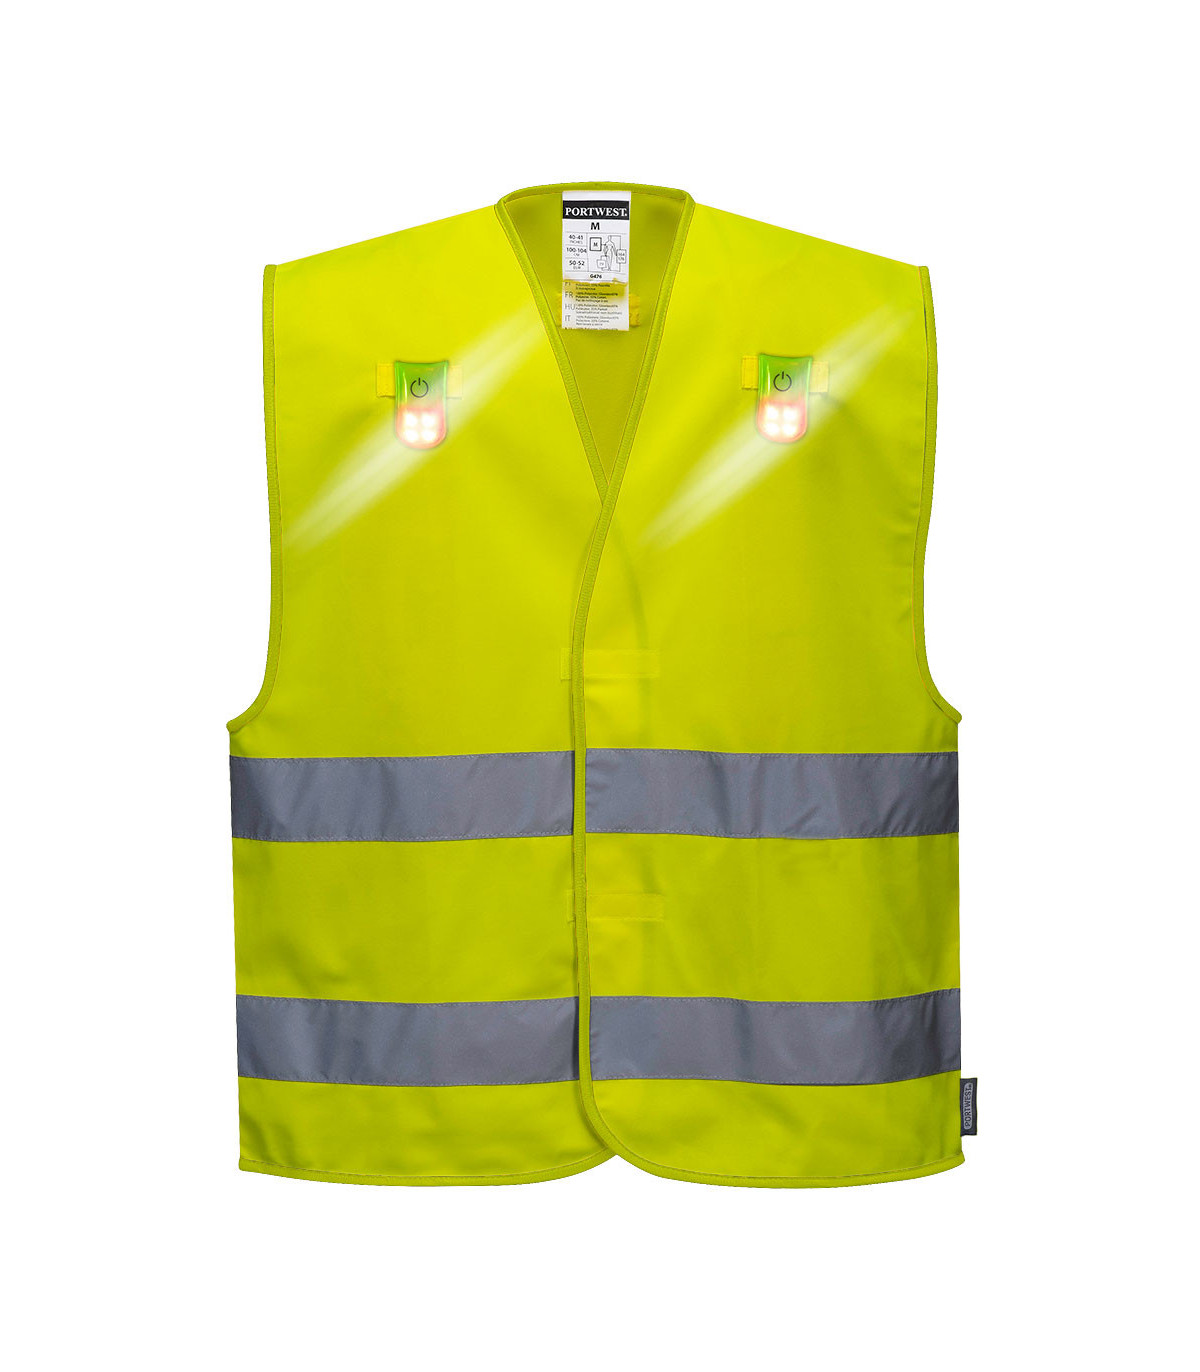 Vestuario laboral, ropa de seguridad y EPIs